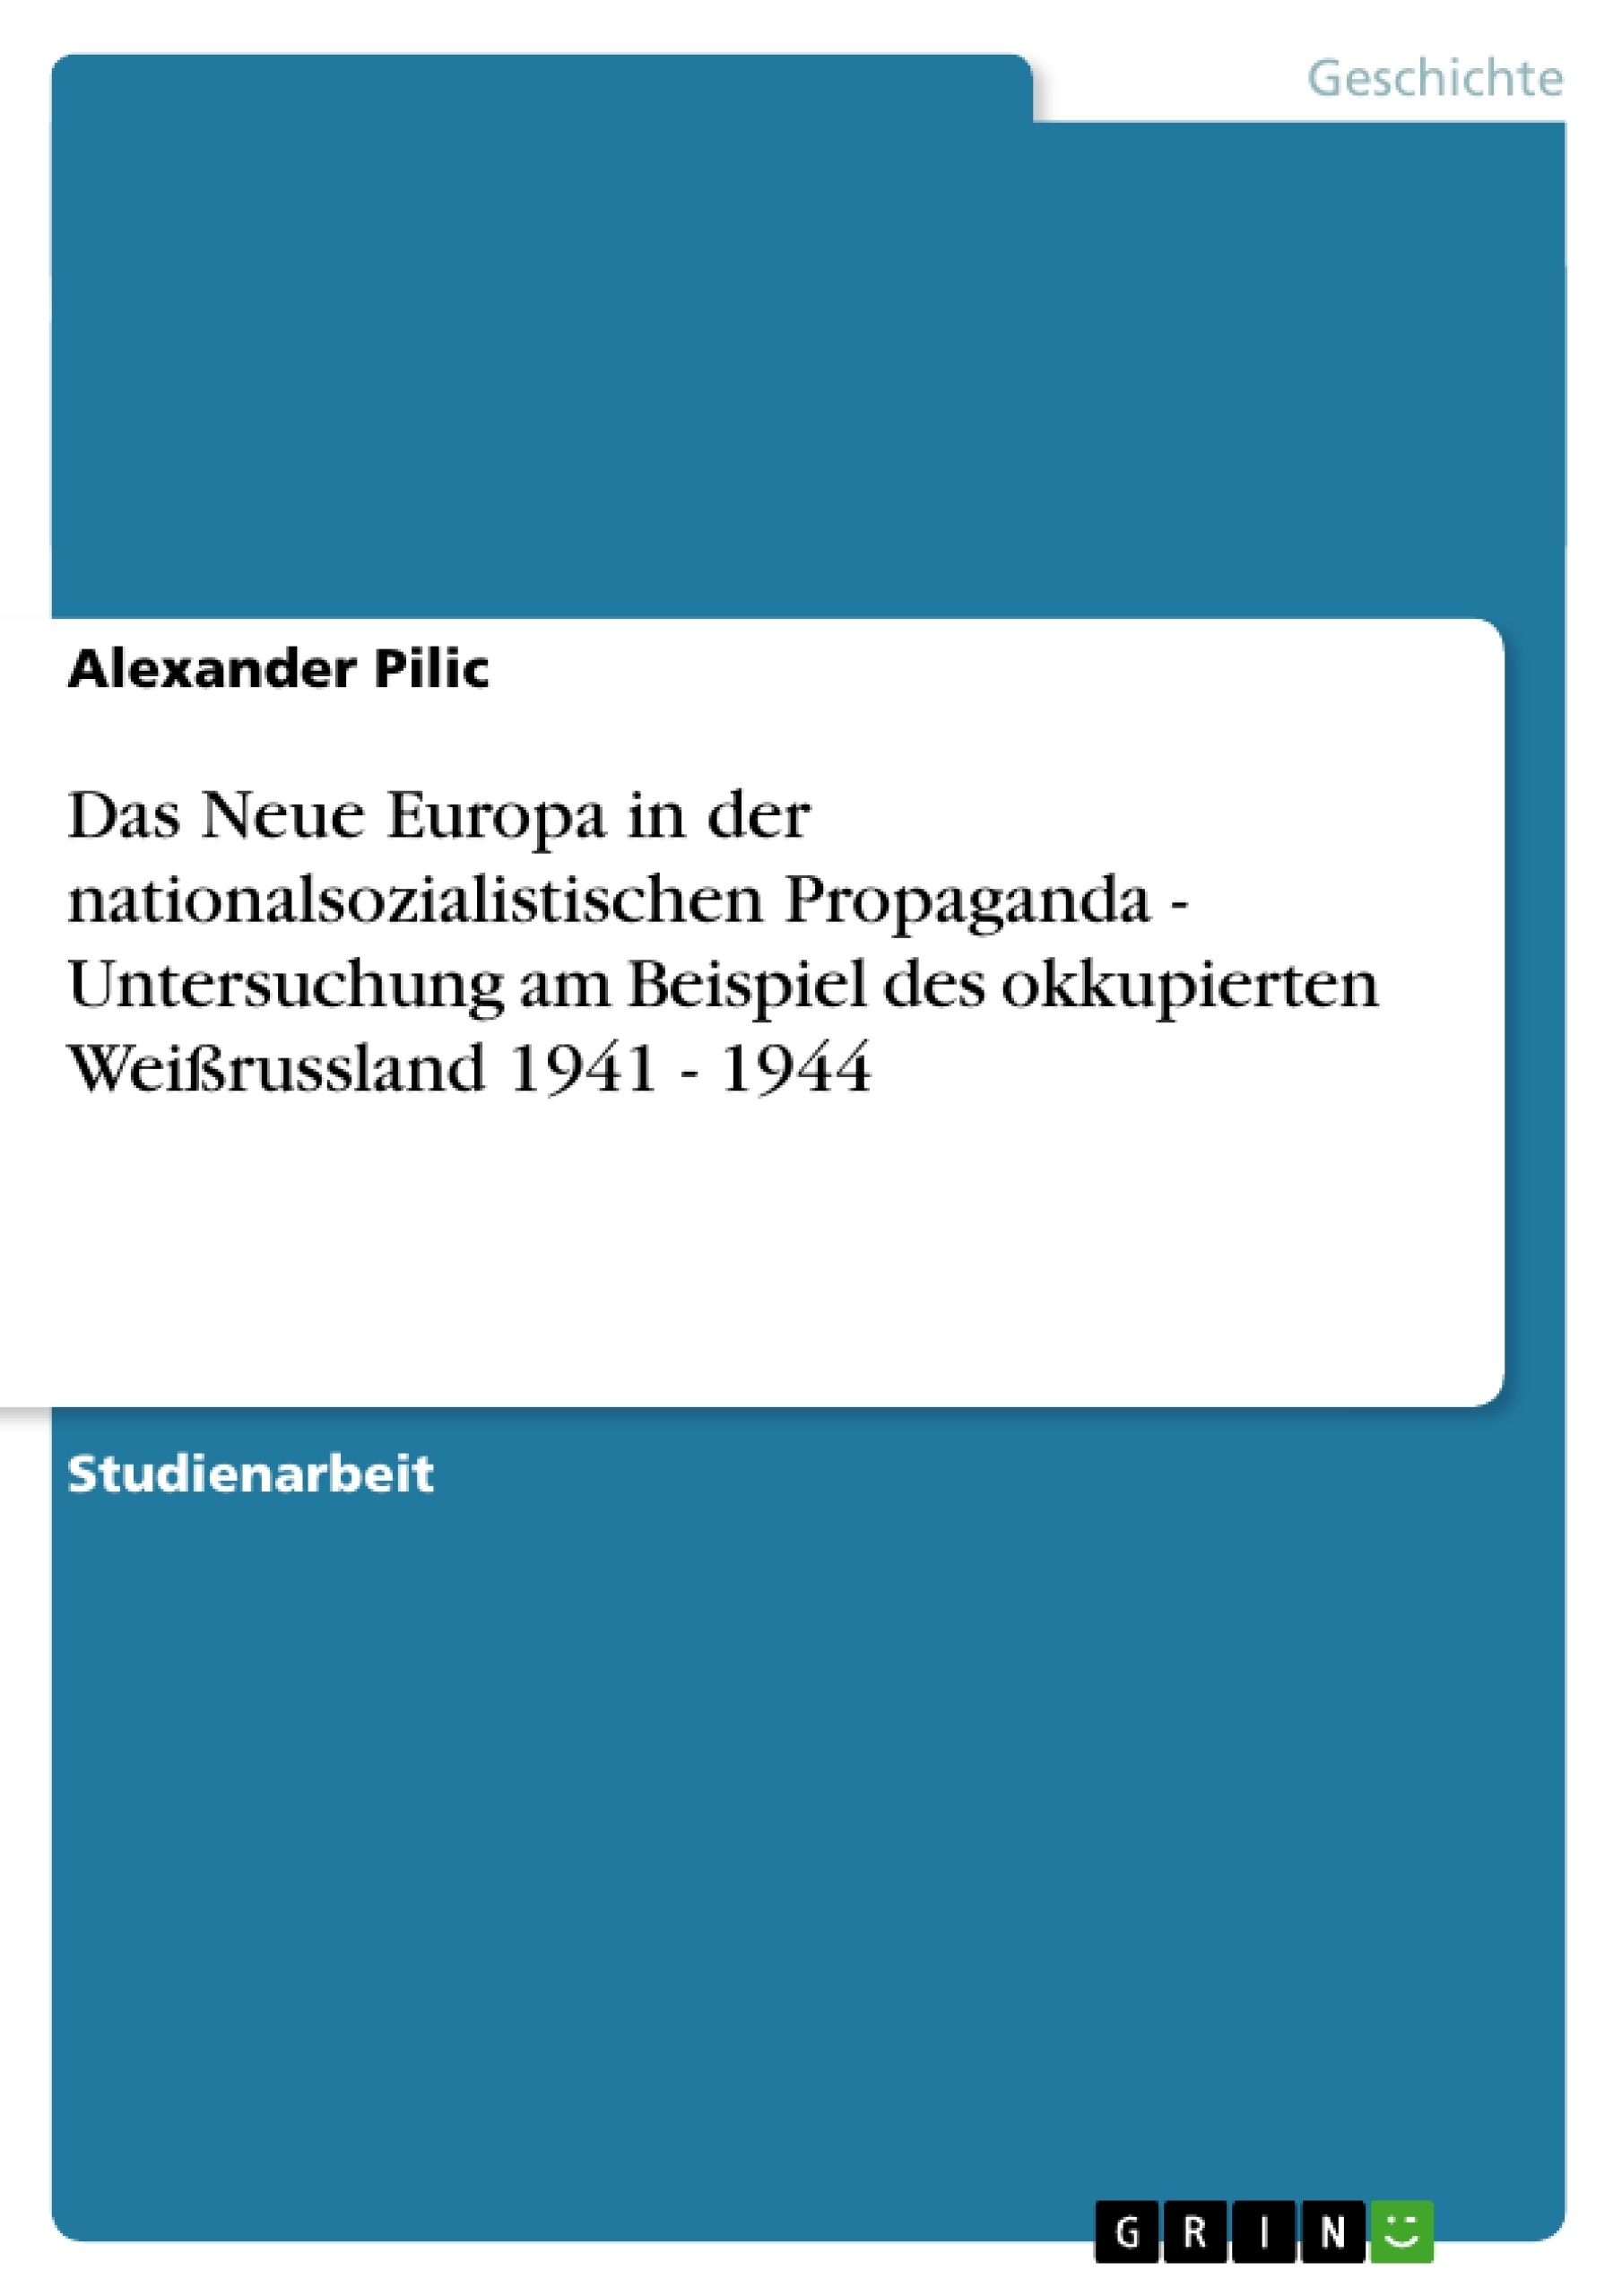 Title: Das Neue Europa in der nationalsozialistischen Propaganda - Untersuchung am Beispiel des okkupierten Weißrussland 1941 - 1944